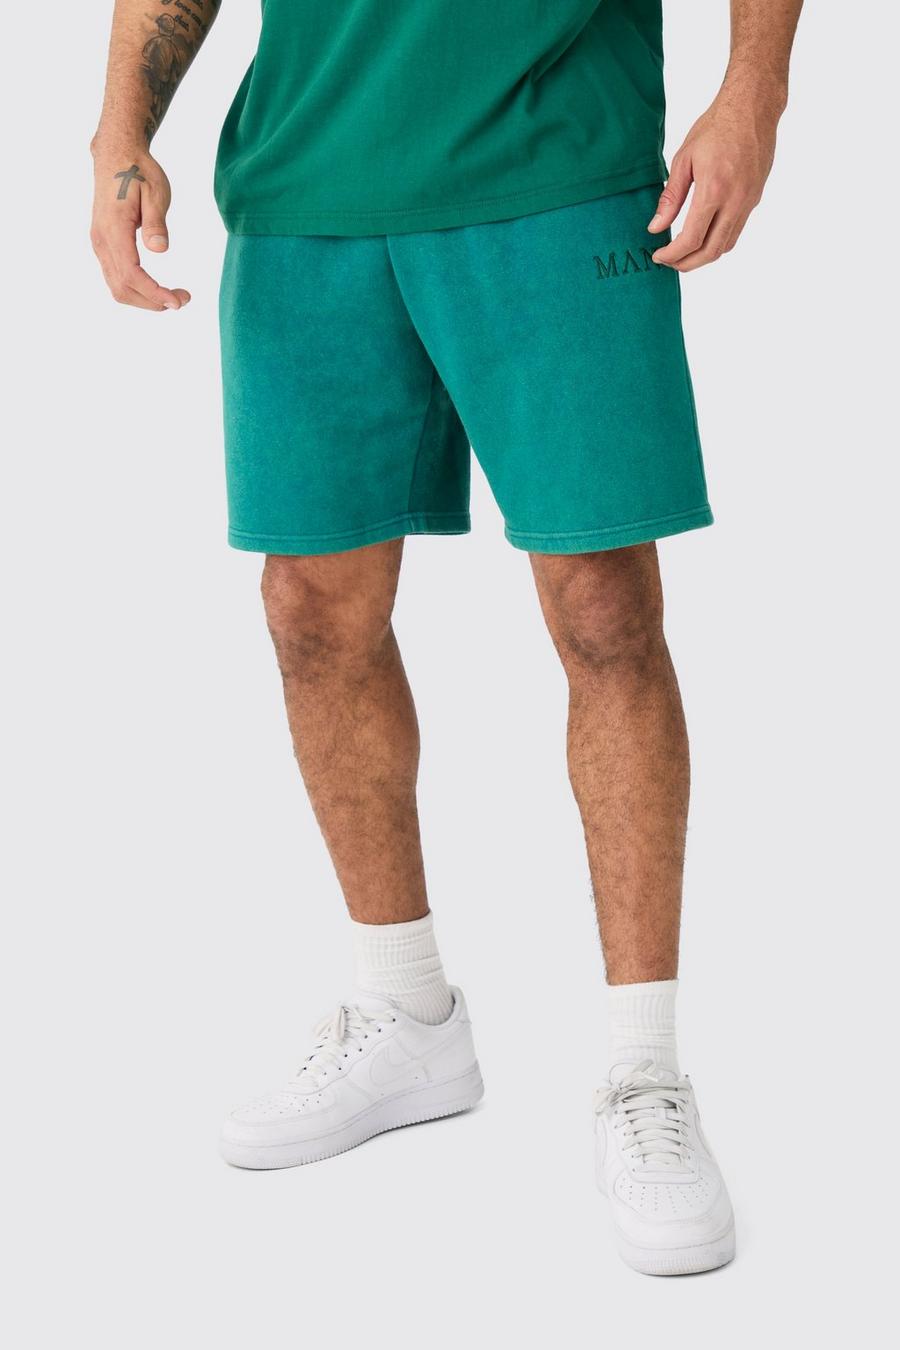 Lockere Man Shorts, Teal image number 1